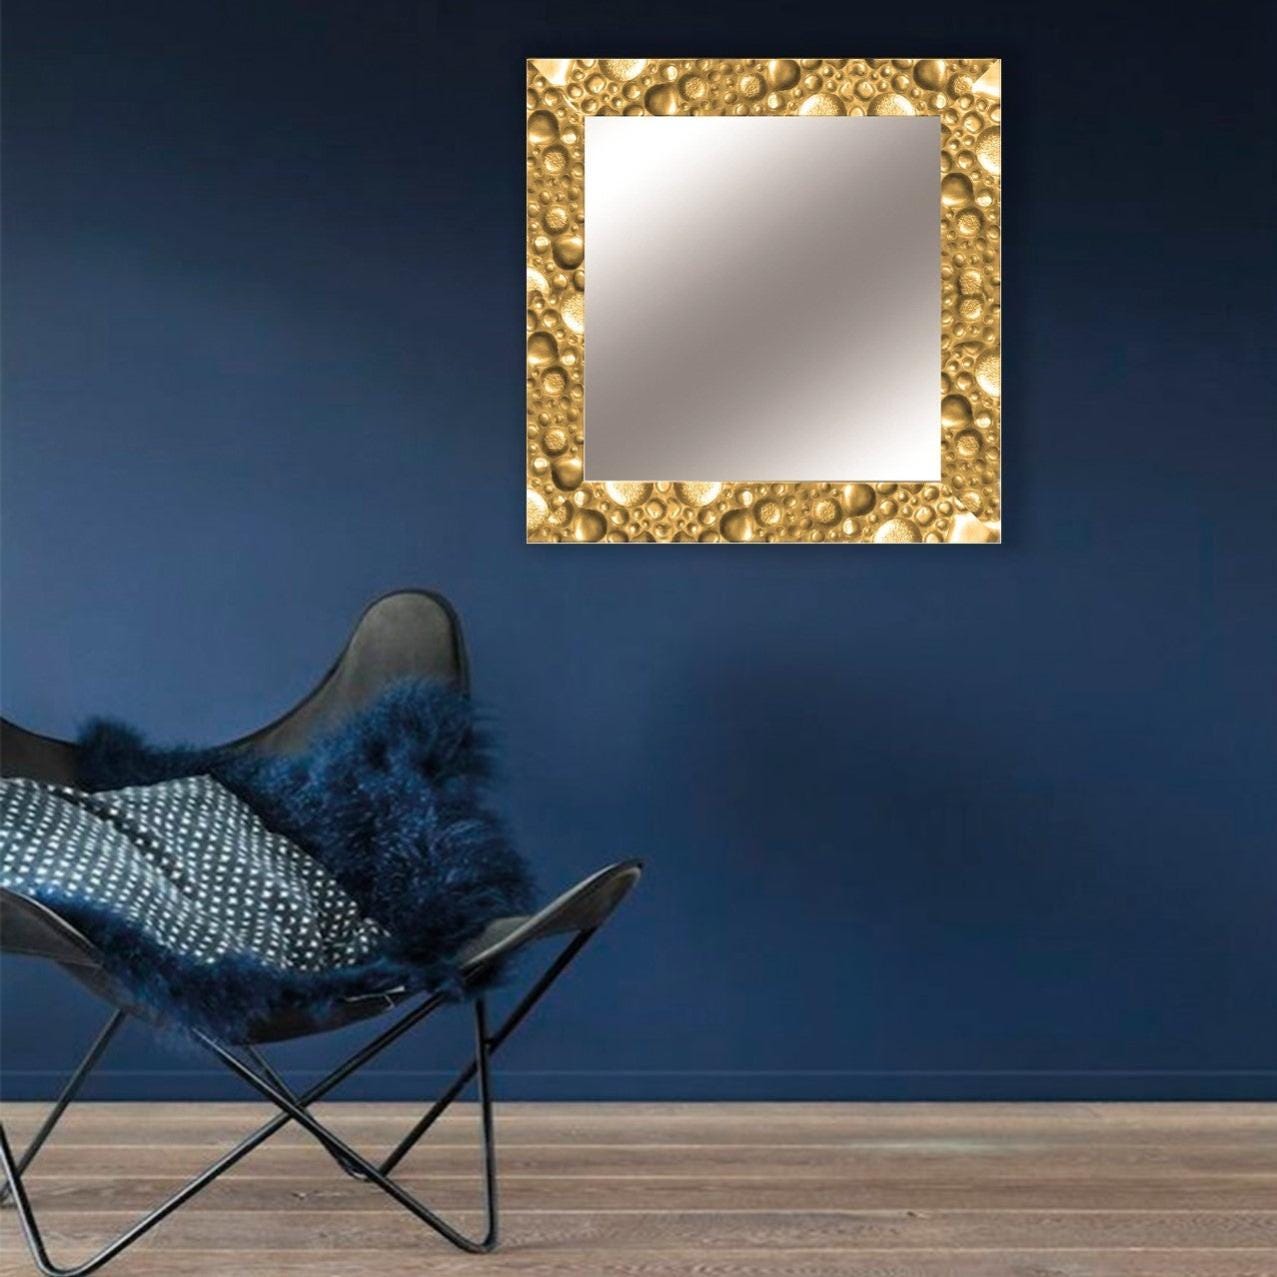 Specchio con cornice da parete rettangolare Barocco oro 96 x 136 cm